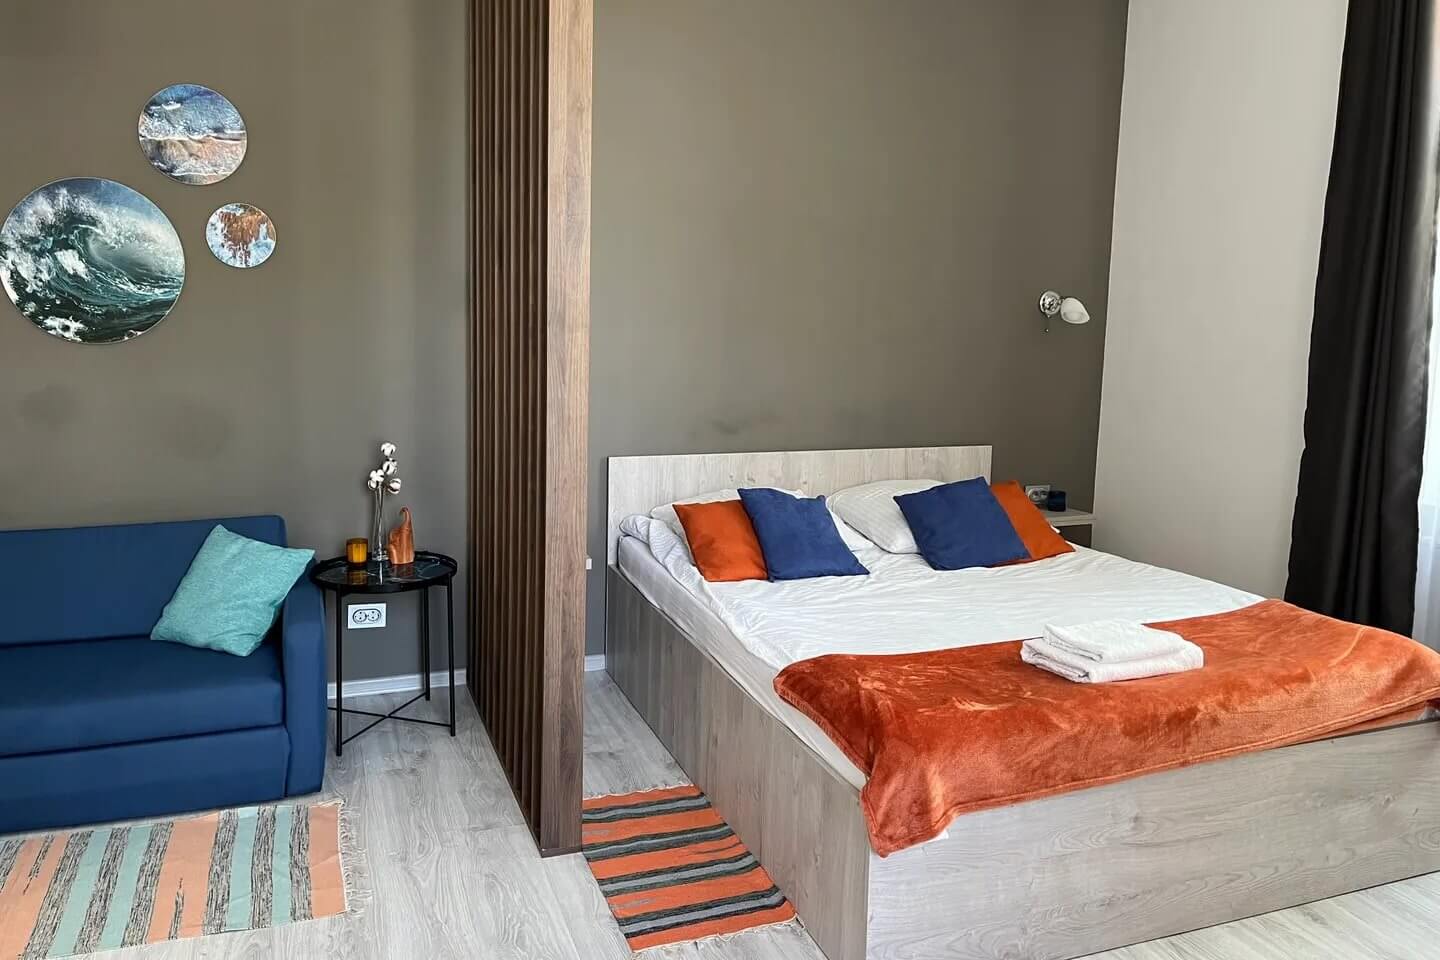 Спальное место в комнате отделено деревянной перегородкой. На кровати саше мандаринового цвета.